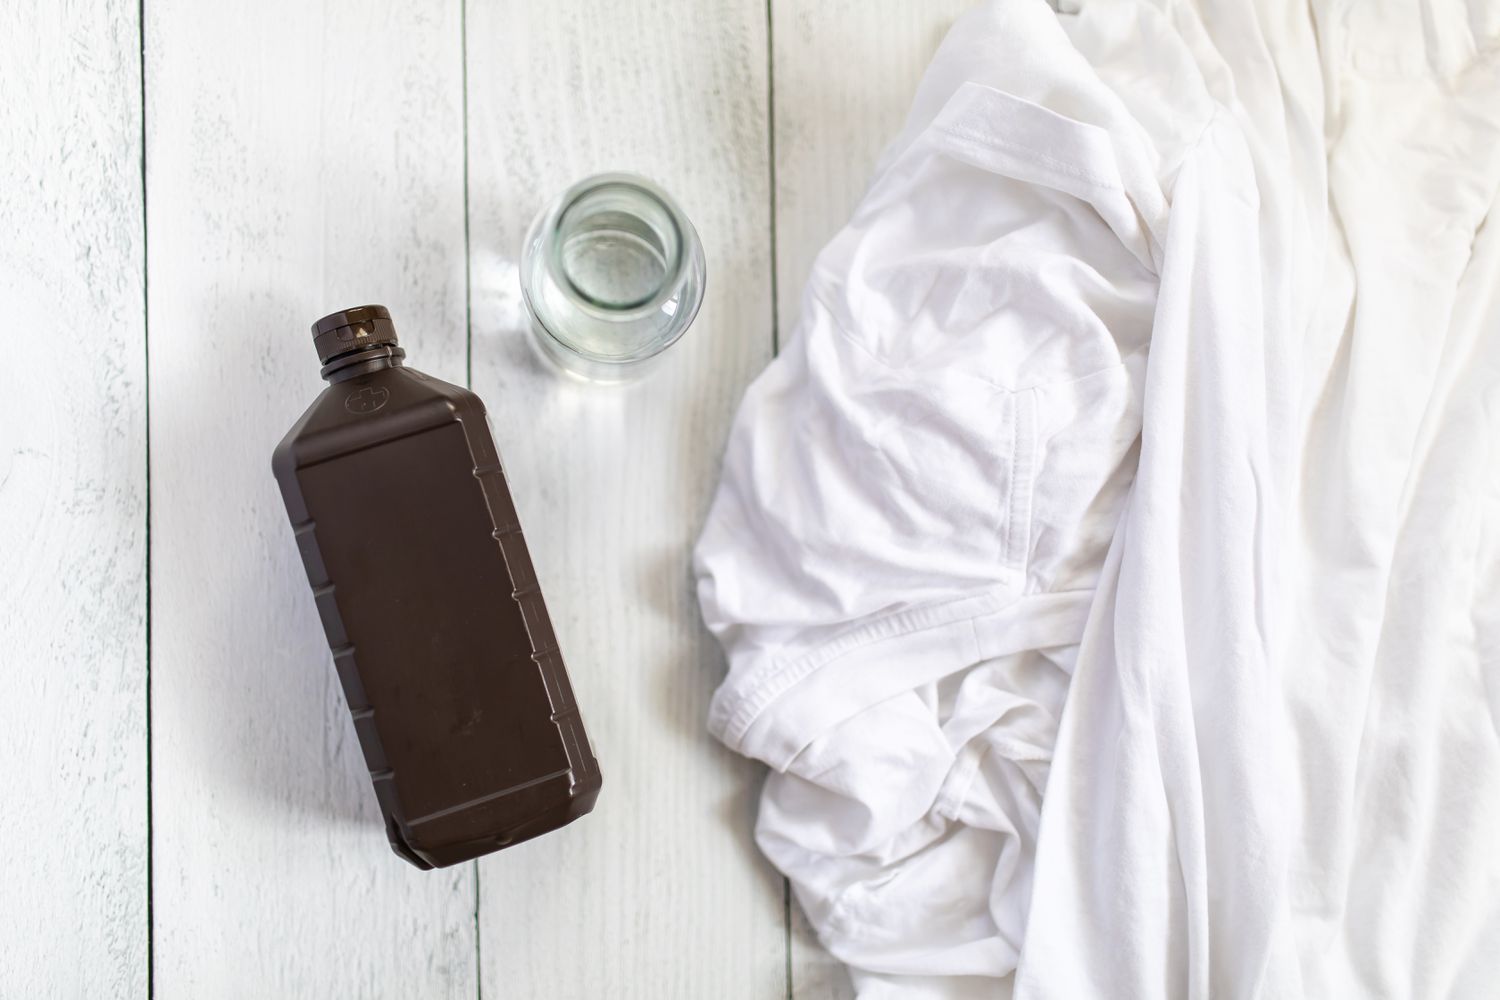 bouteille d'eau oxygénée à côté de vêtements blancs